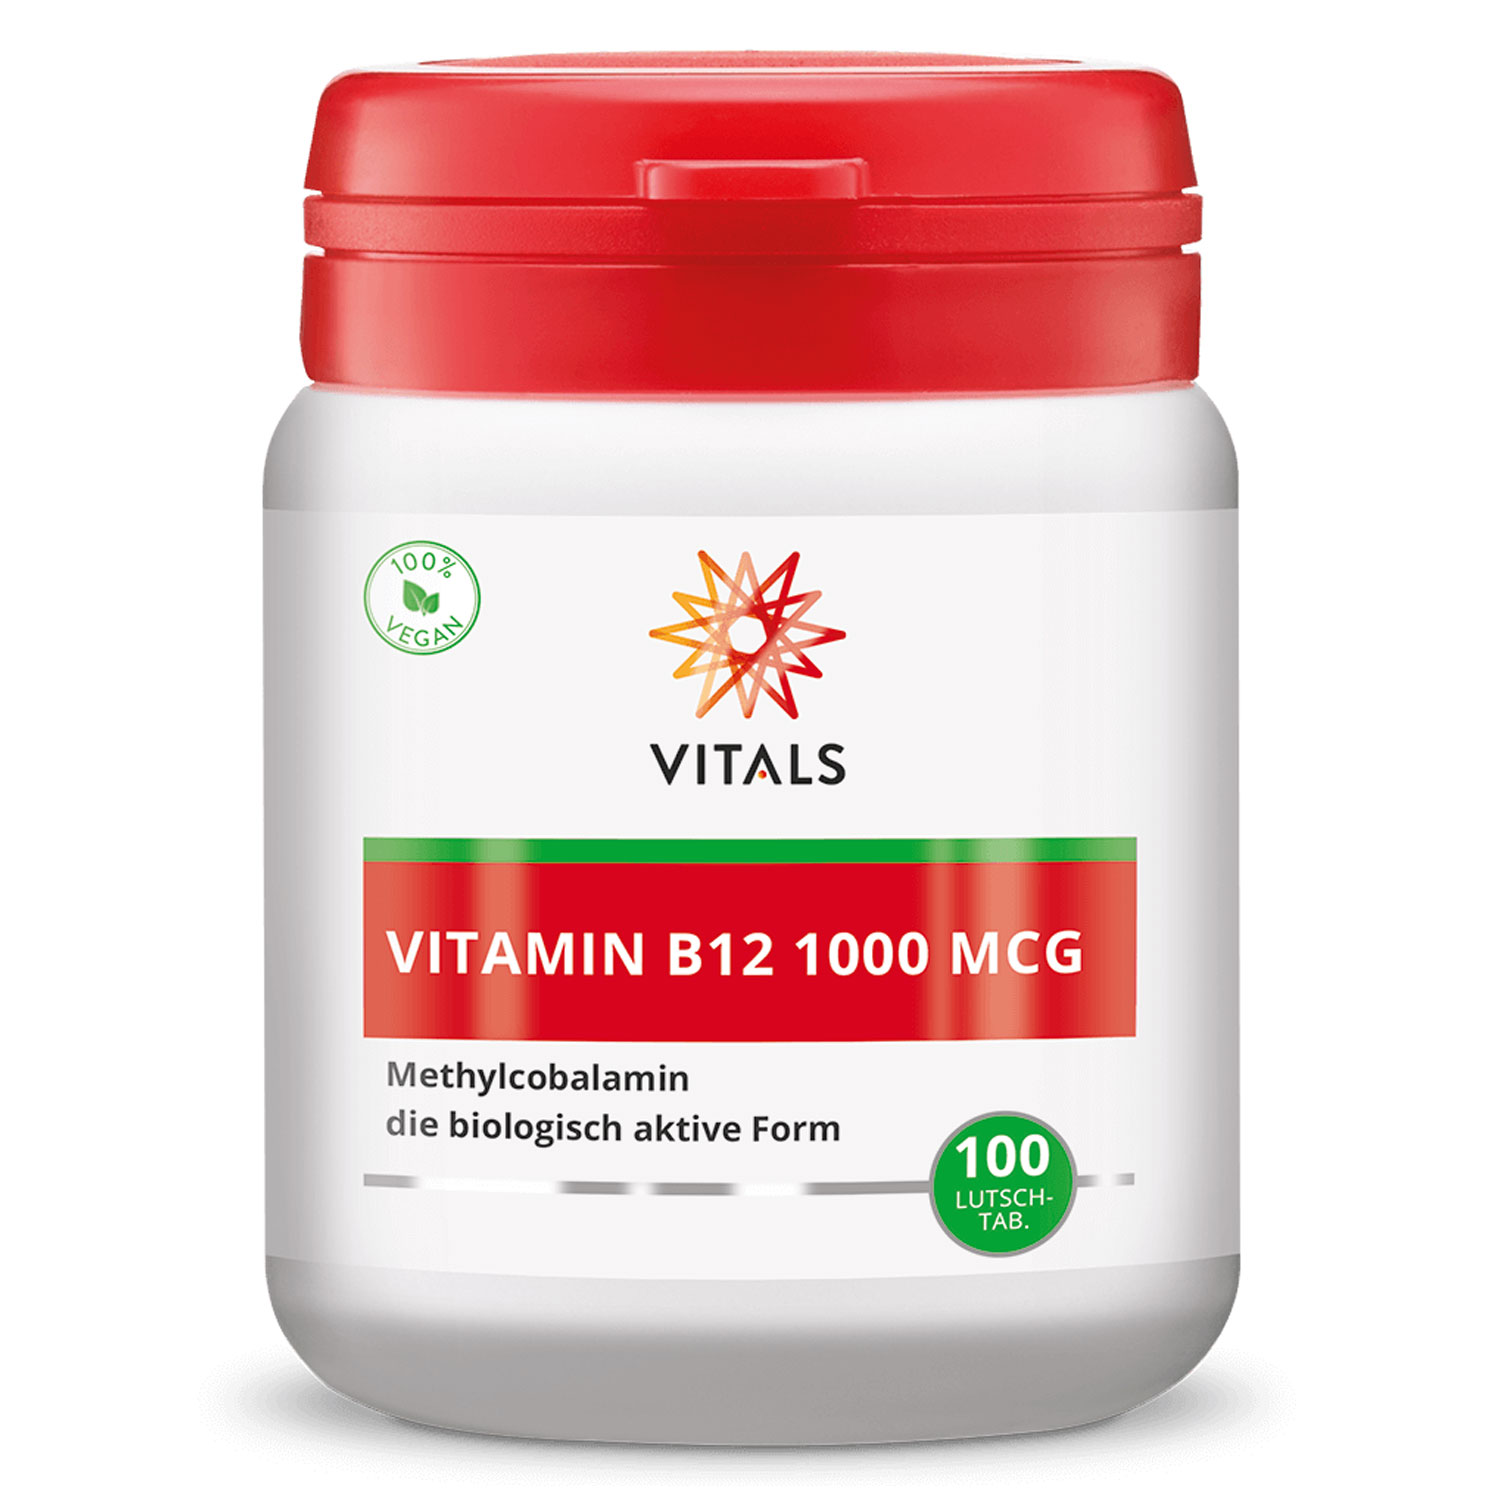 Vitamin B12 1000 mcg von Vitals - 100 Lutschtabletten